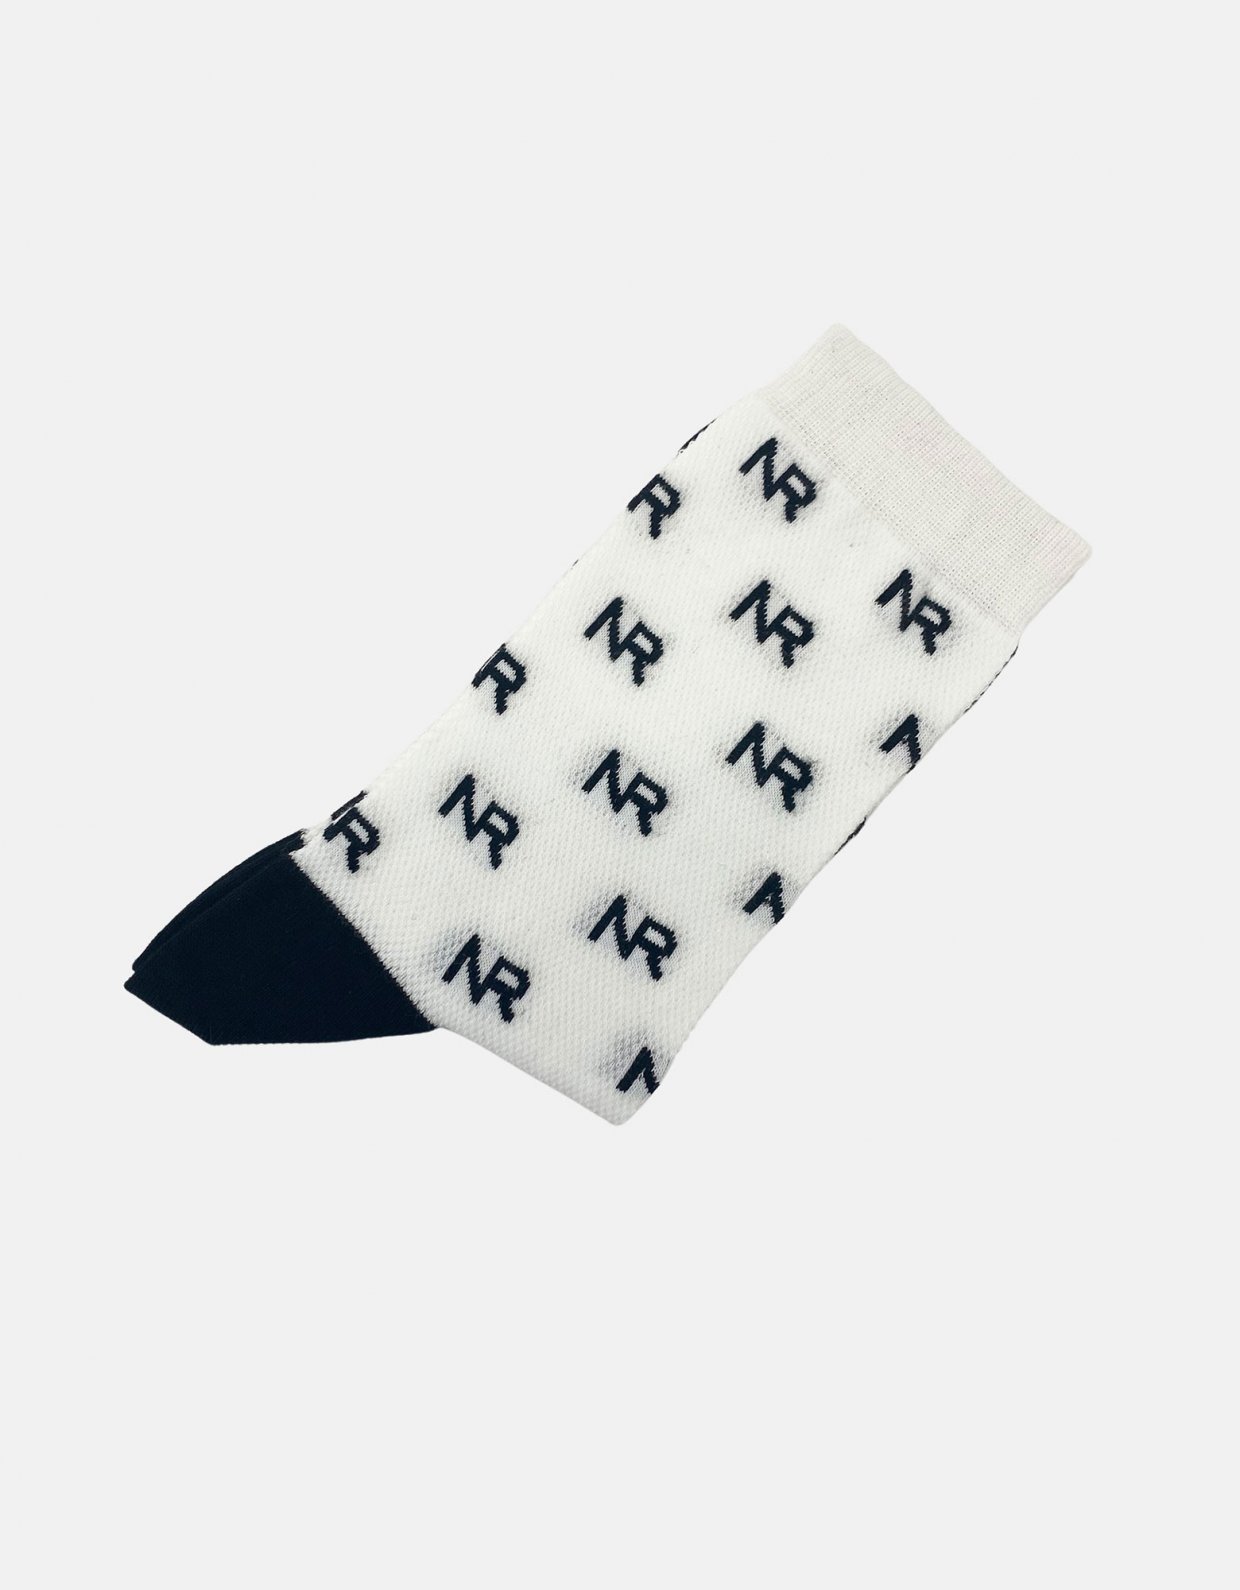 Nadia Rapti Full in logo socks white